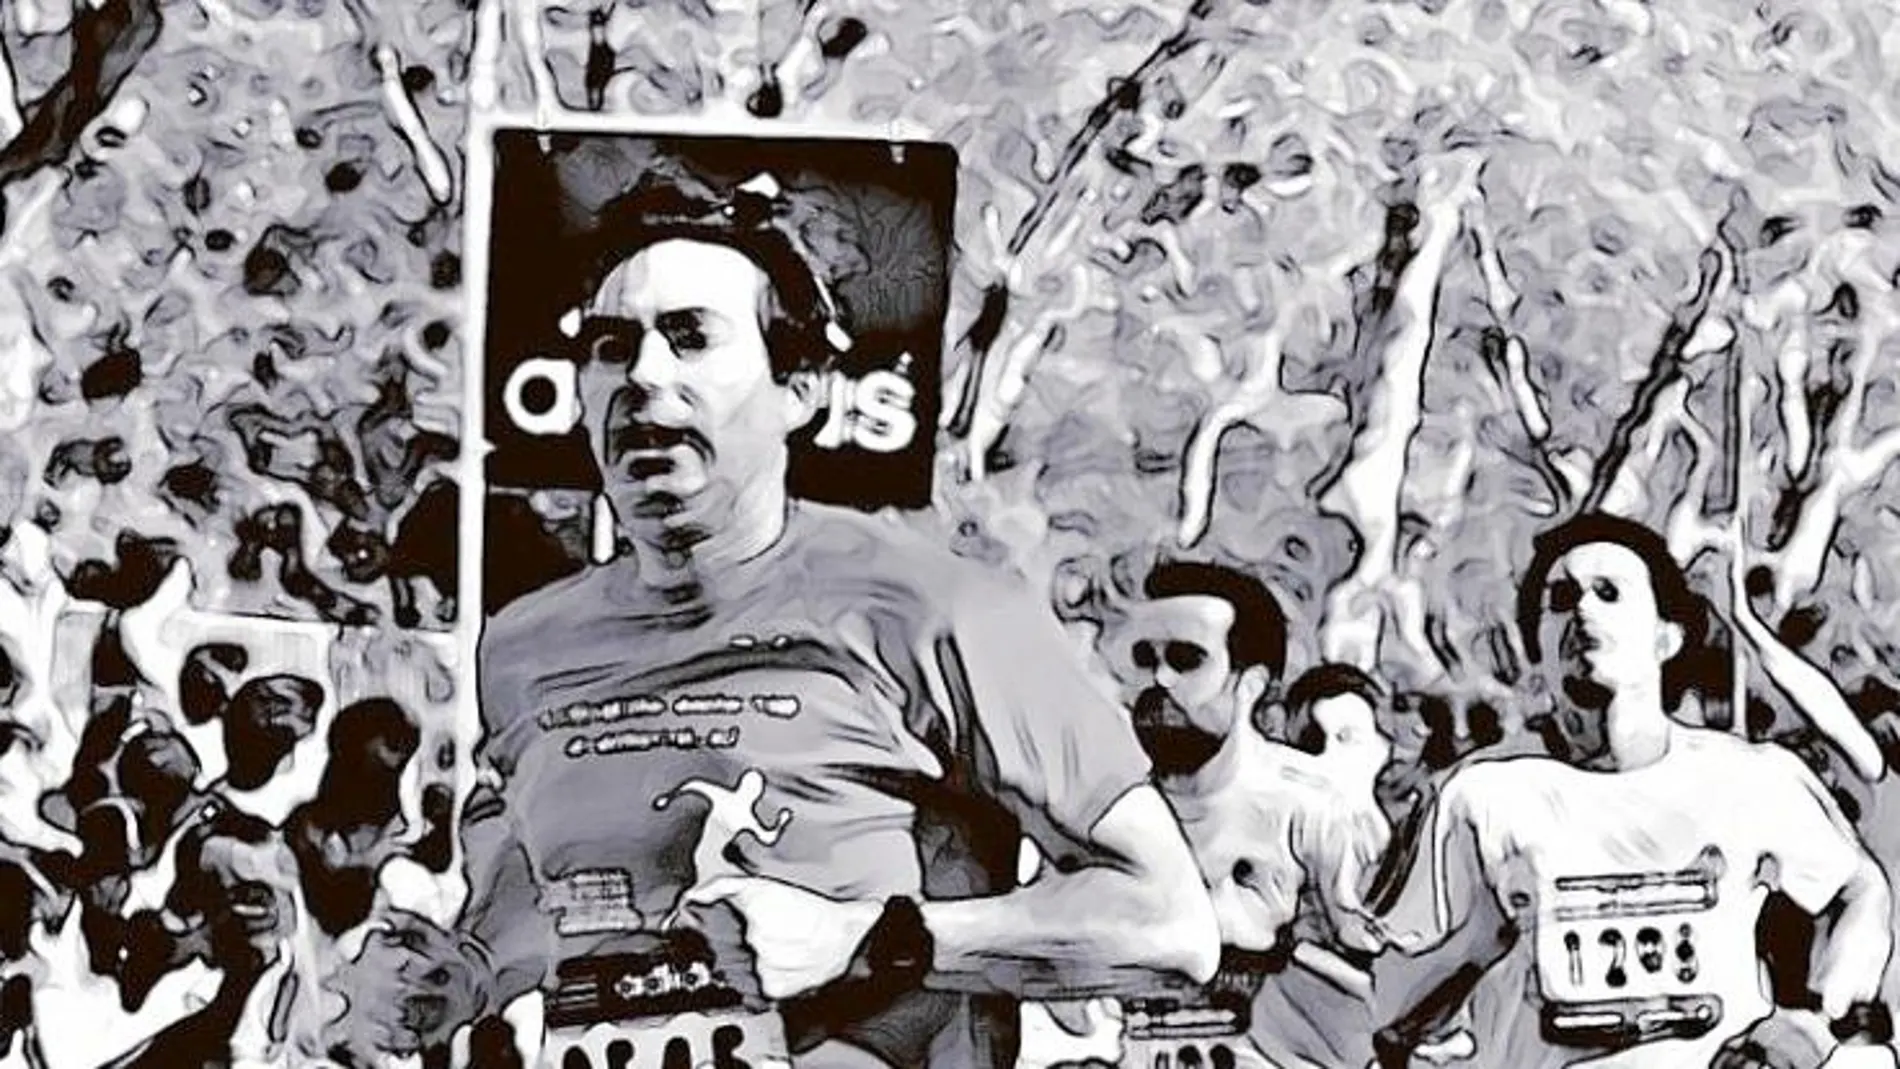 Jesús Martín Tapias cruzando la meta de uno de los maratones que corrió